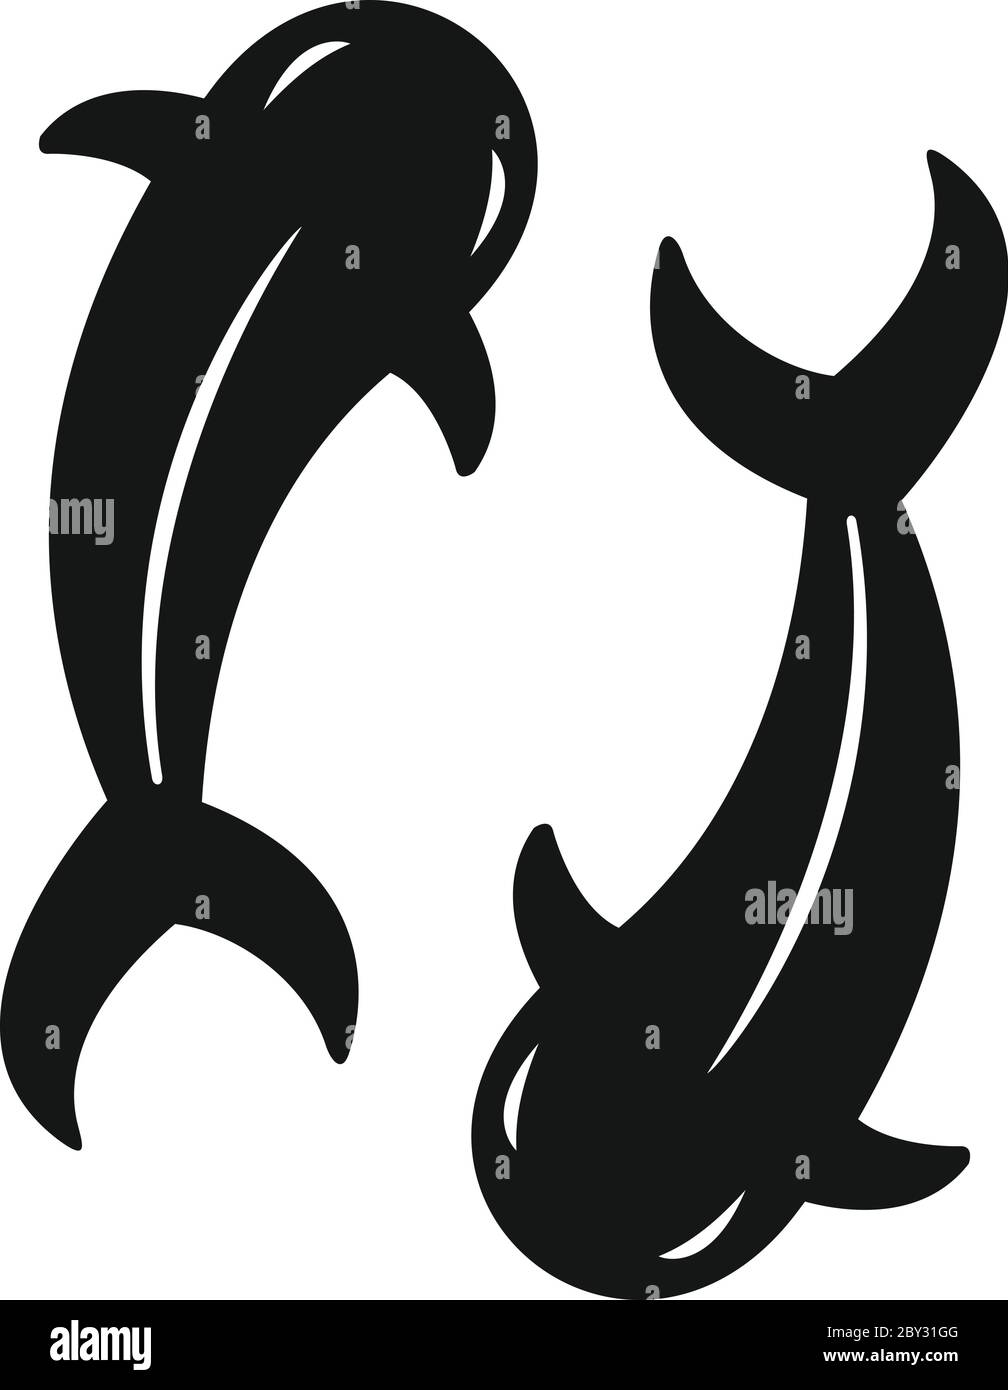 Icône Koi carp. Illustration simple de l'icône de vecteur koi carp pour la conception de sites Web isolée sur fond blanc Illustration de Vecteur